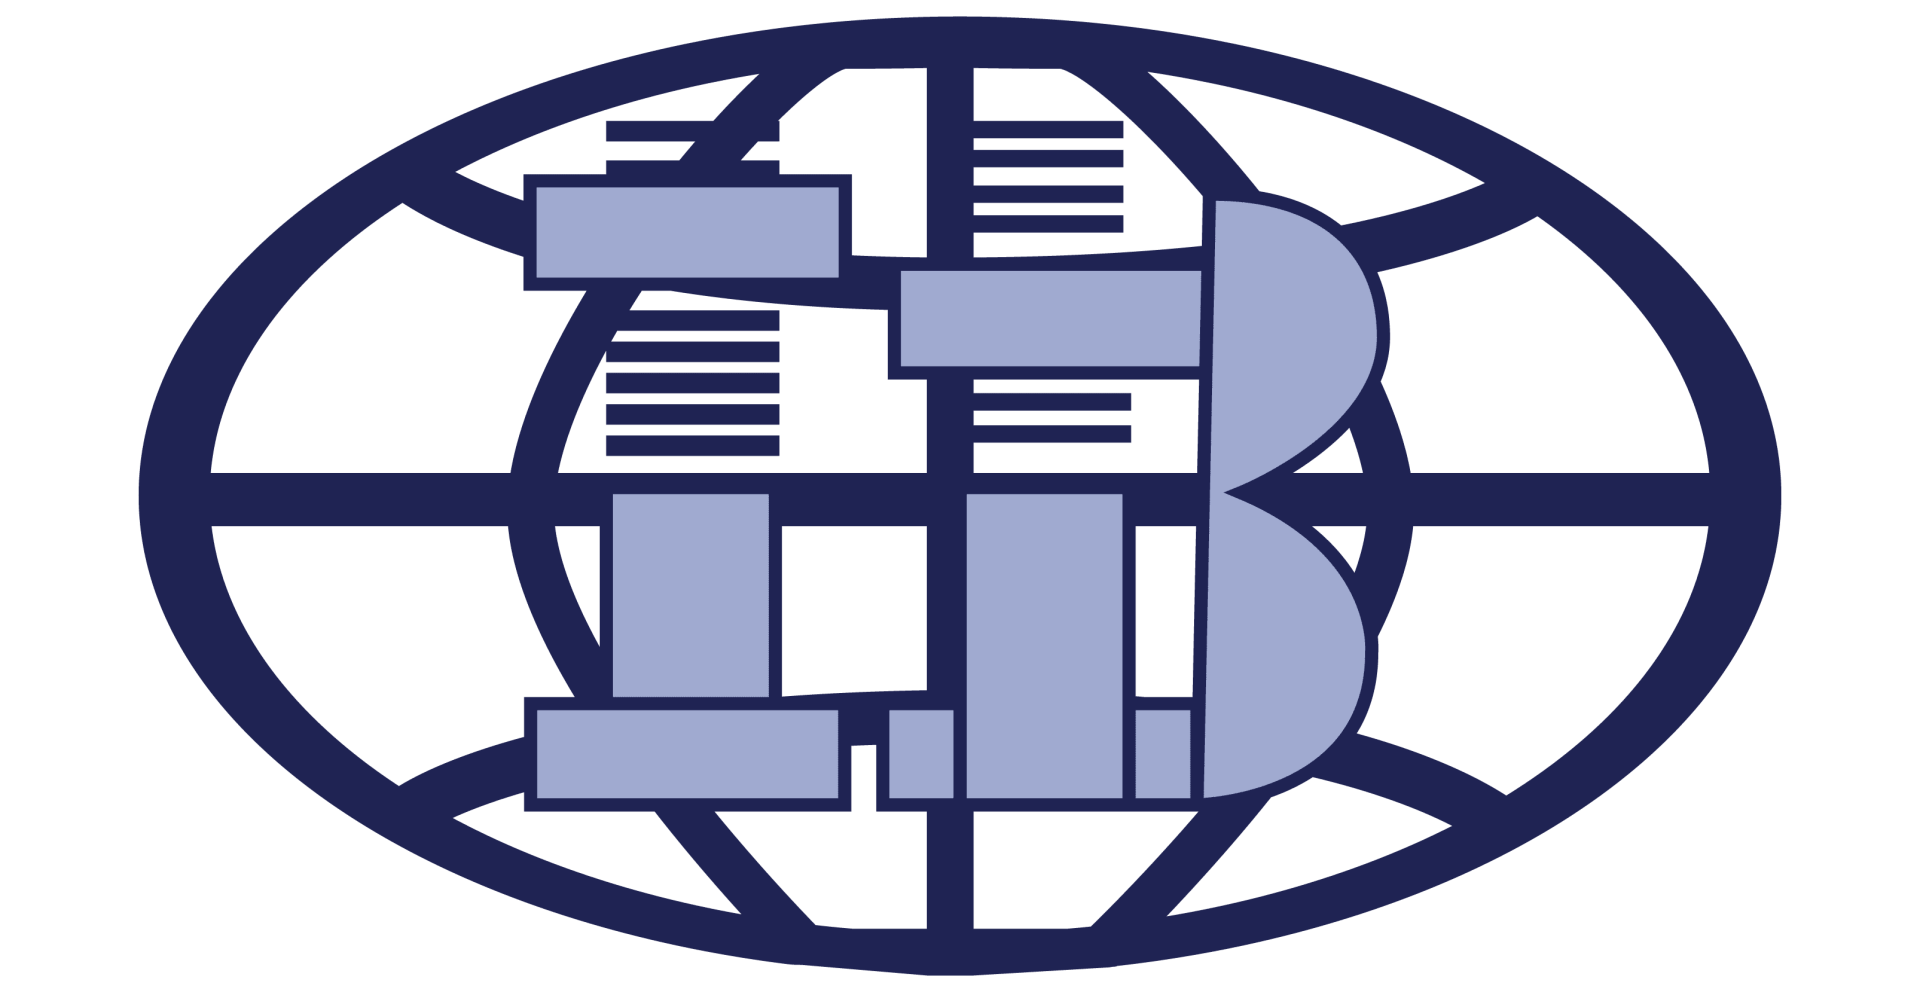 Importaciones Betanco logo